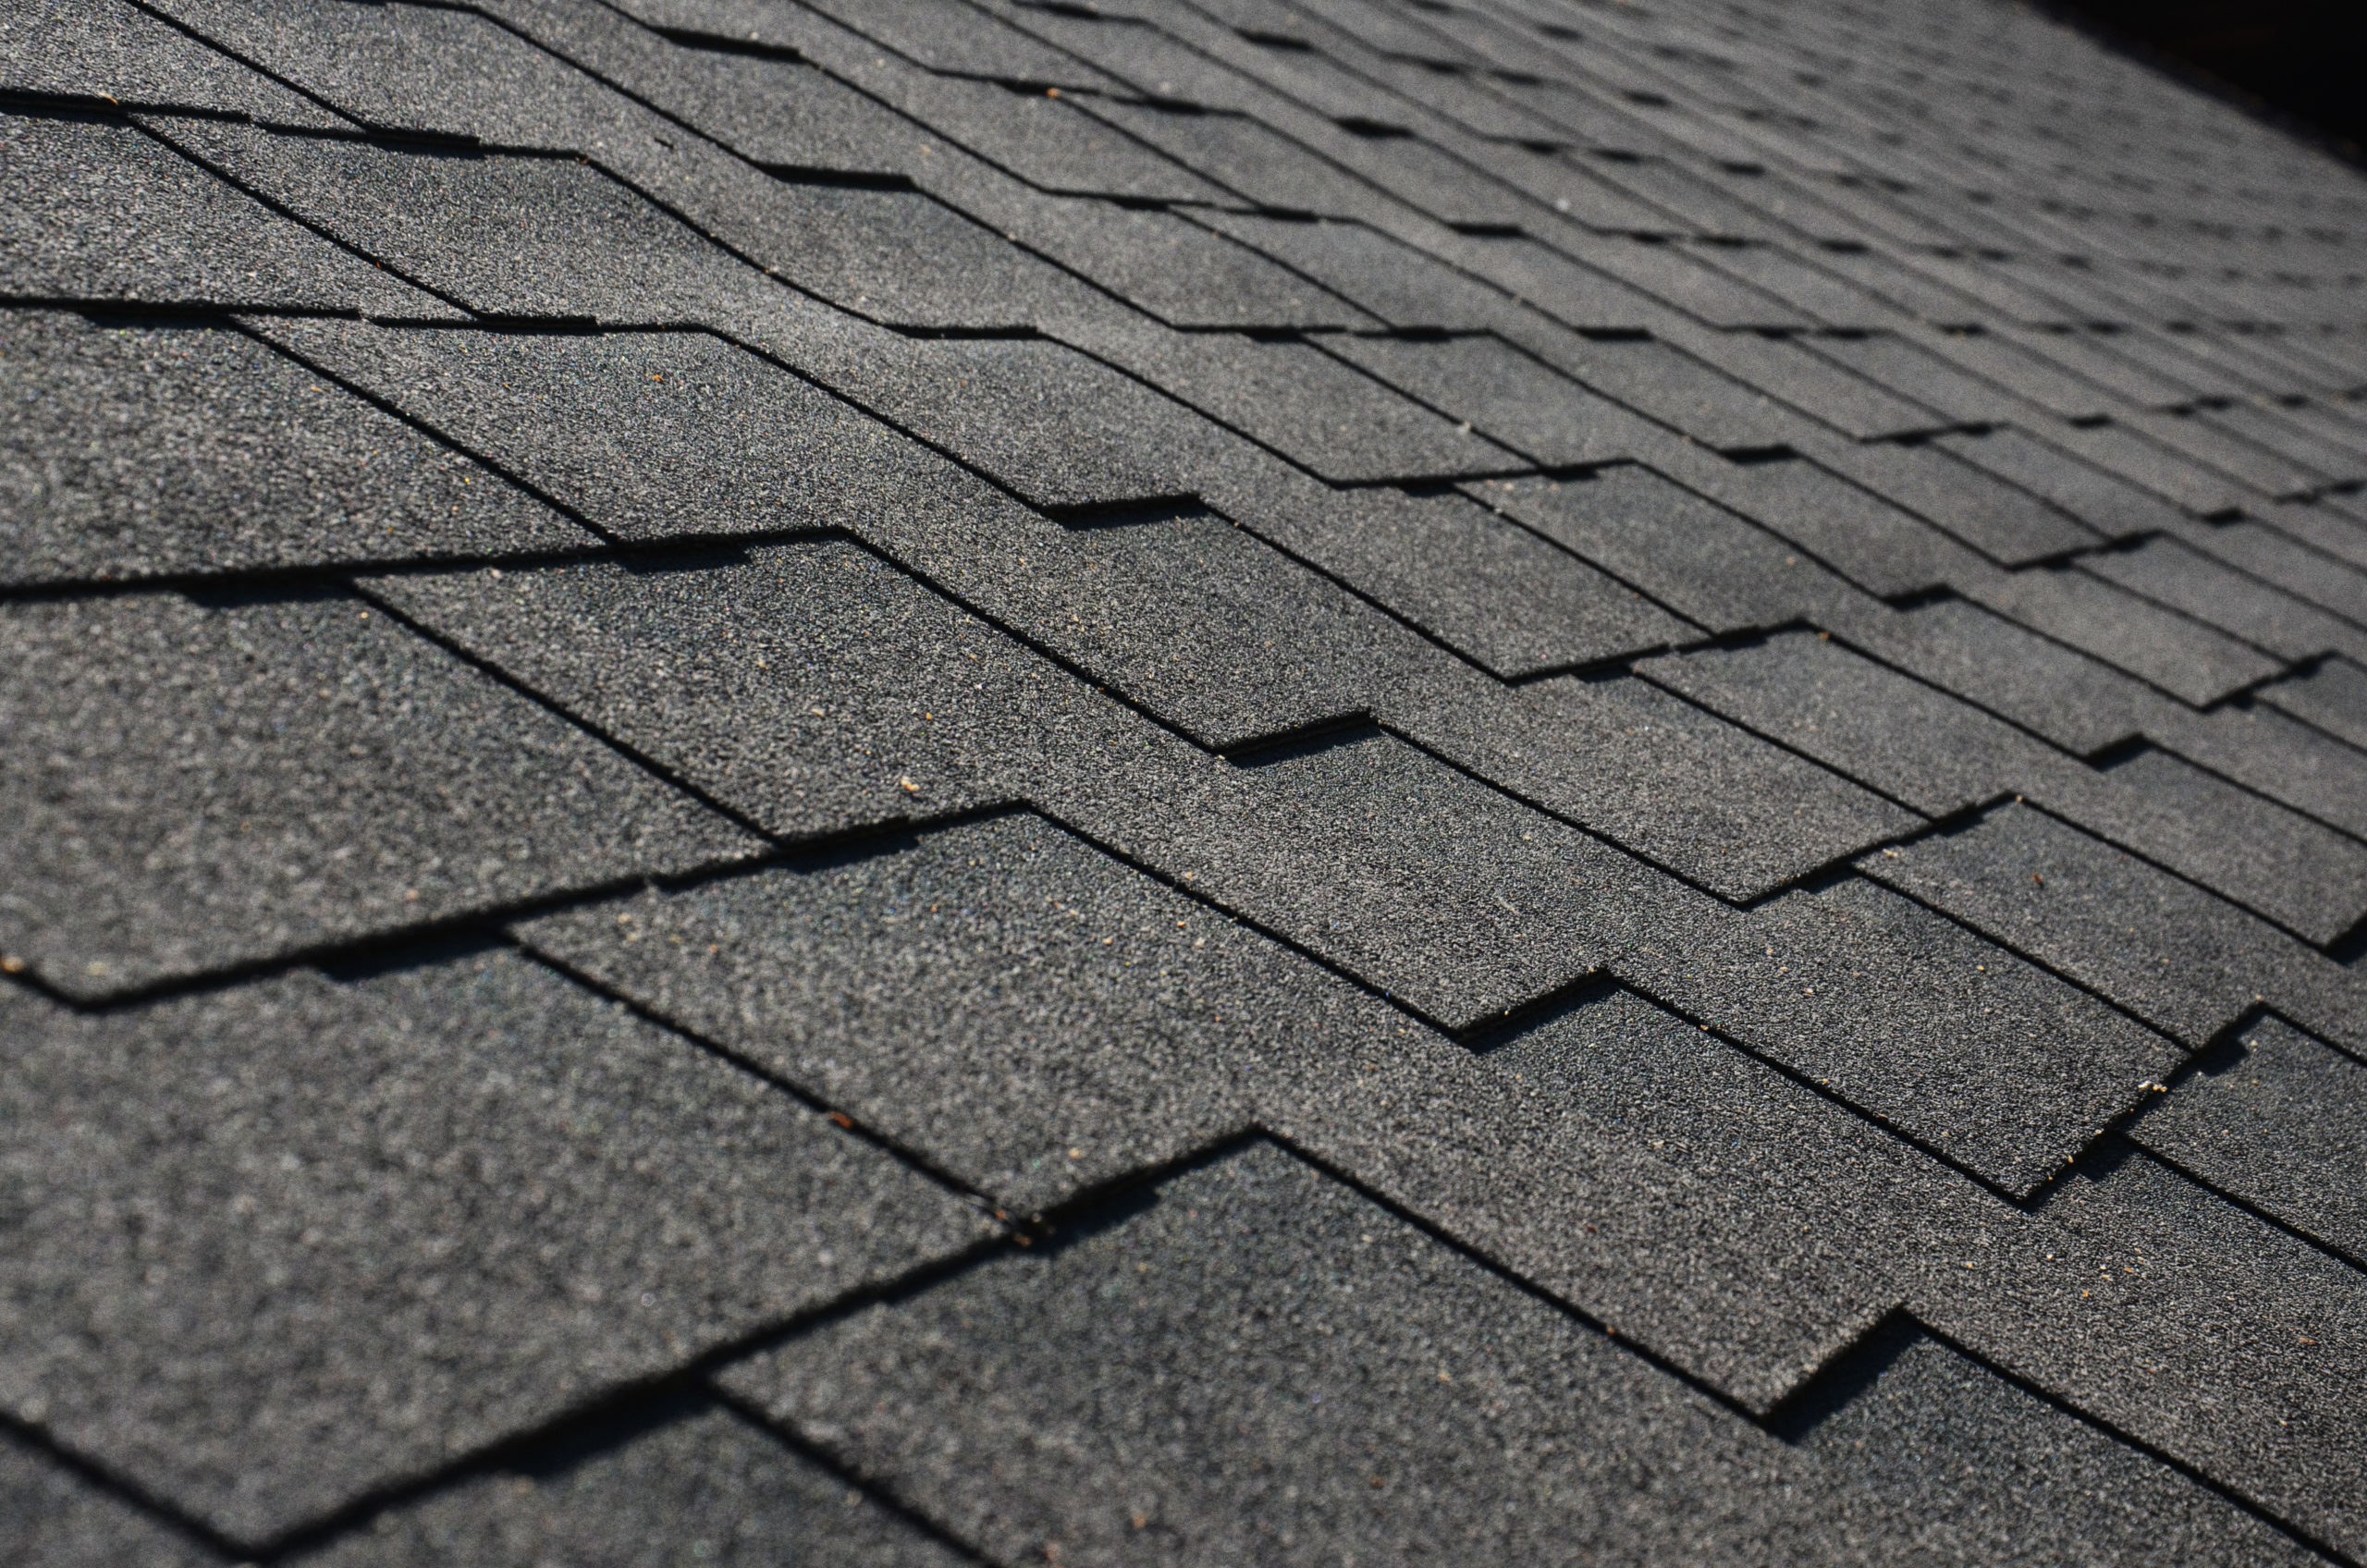 shingle roof repair